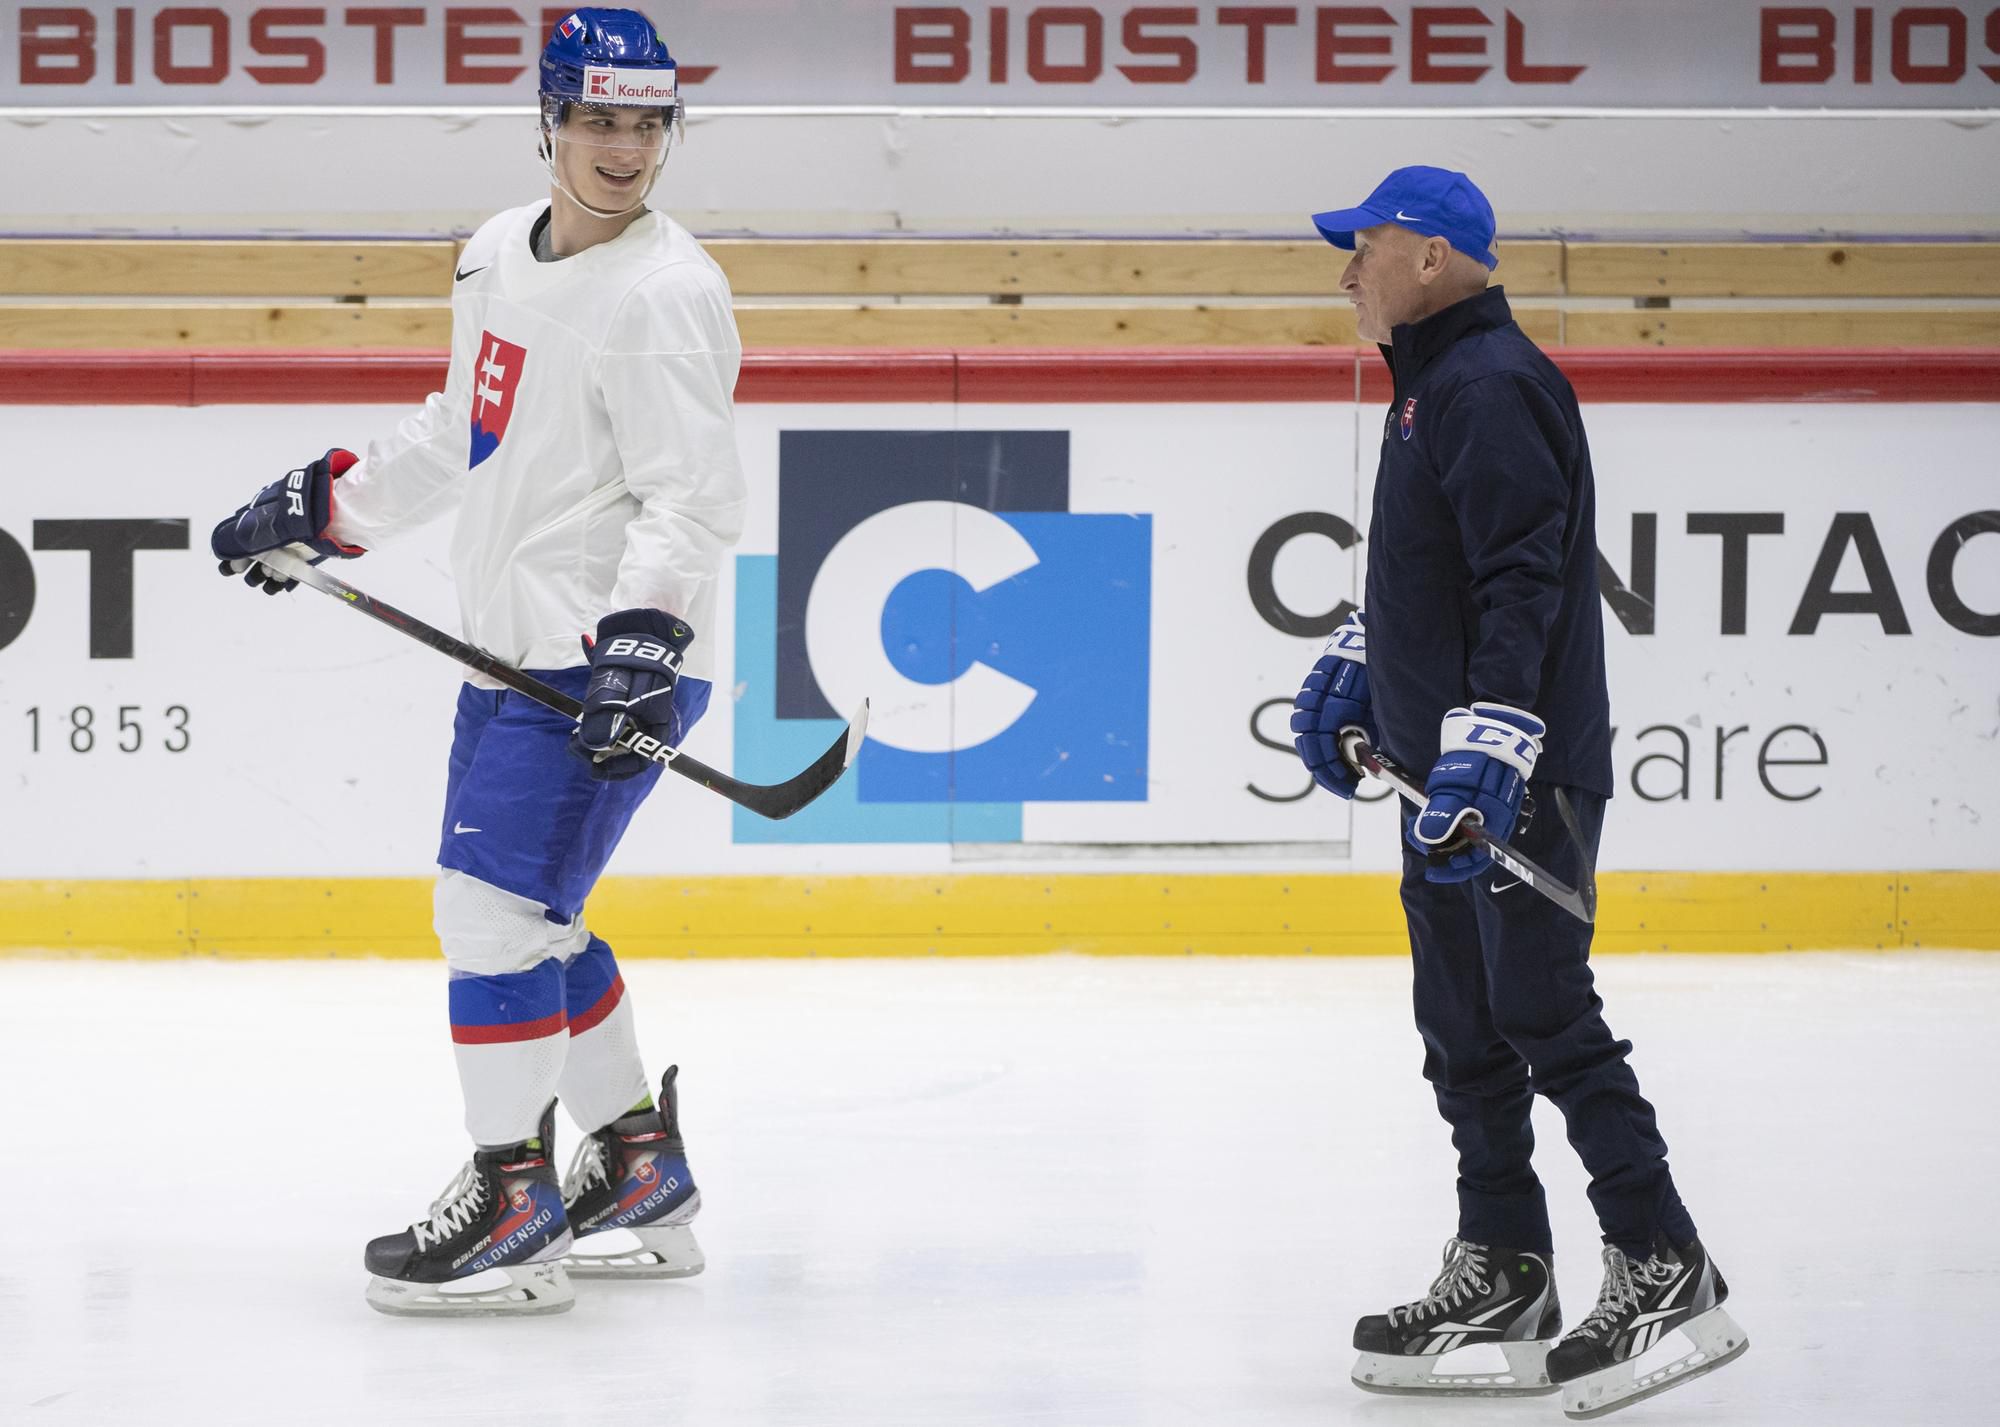 MS v hokeji 2022: Juraj Slafkovský a vpravo tréner Craig Ramsay počas tréningu slovenskej hokejovej reprezentácie